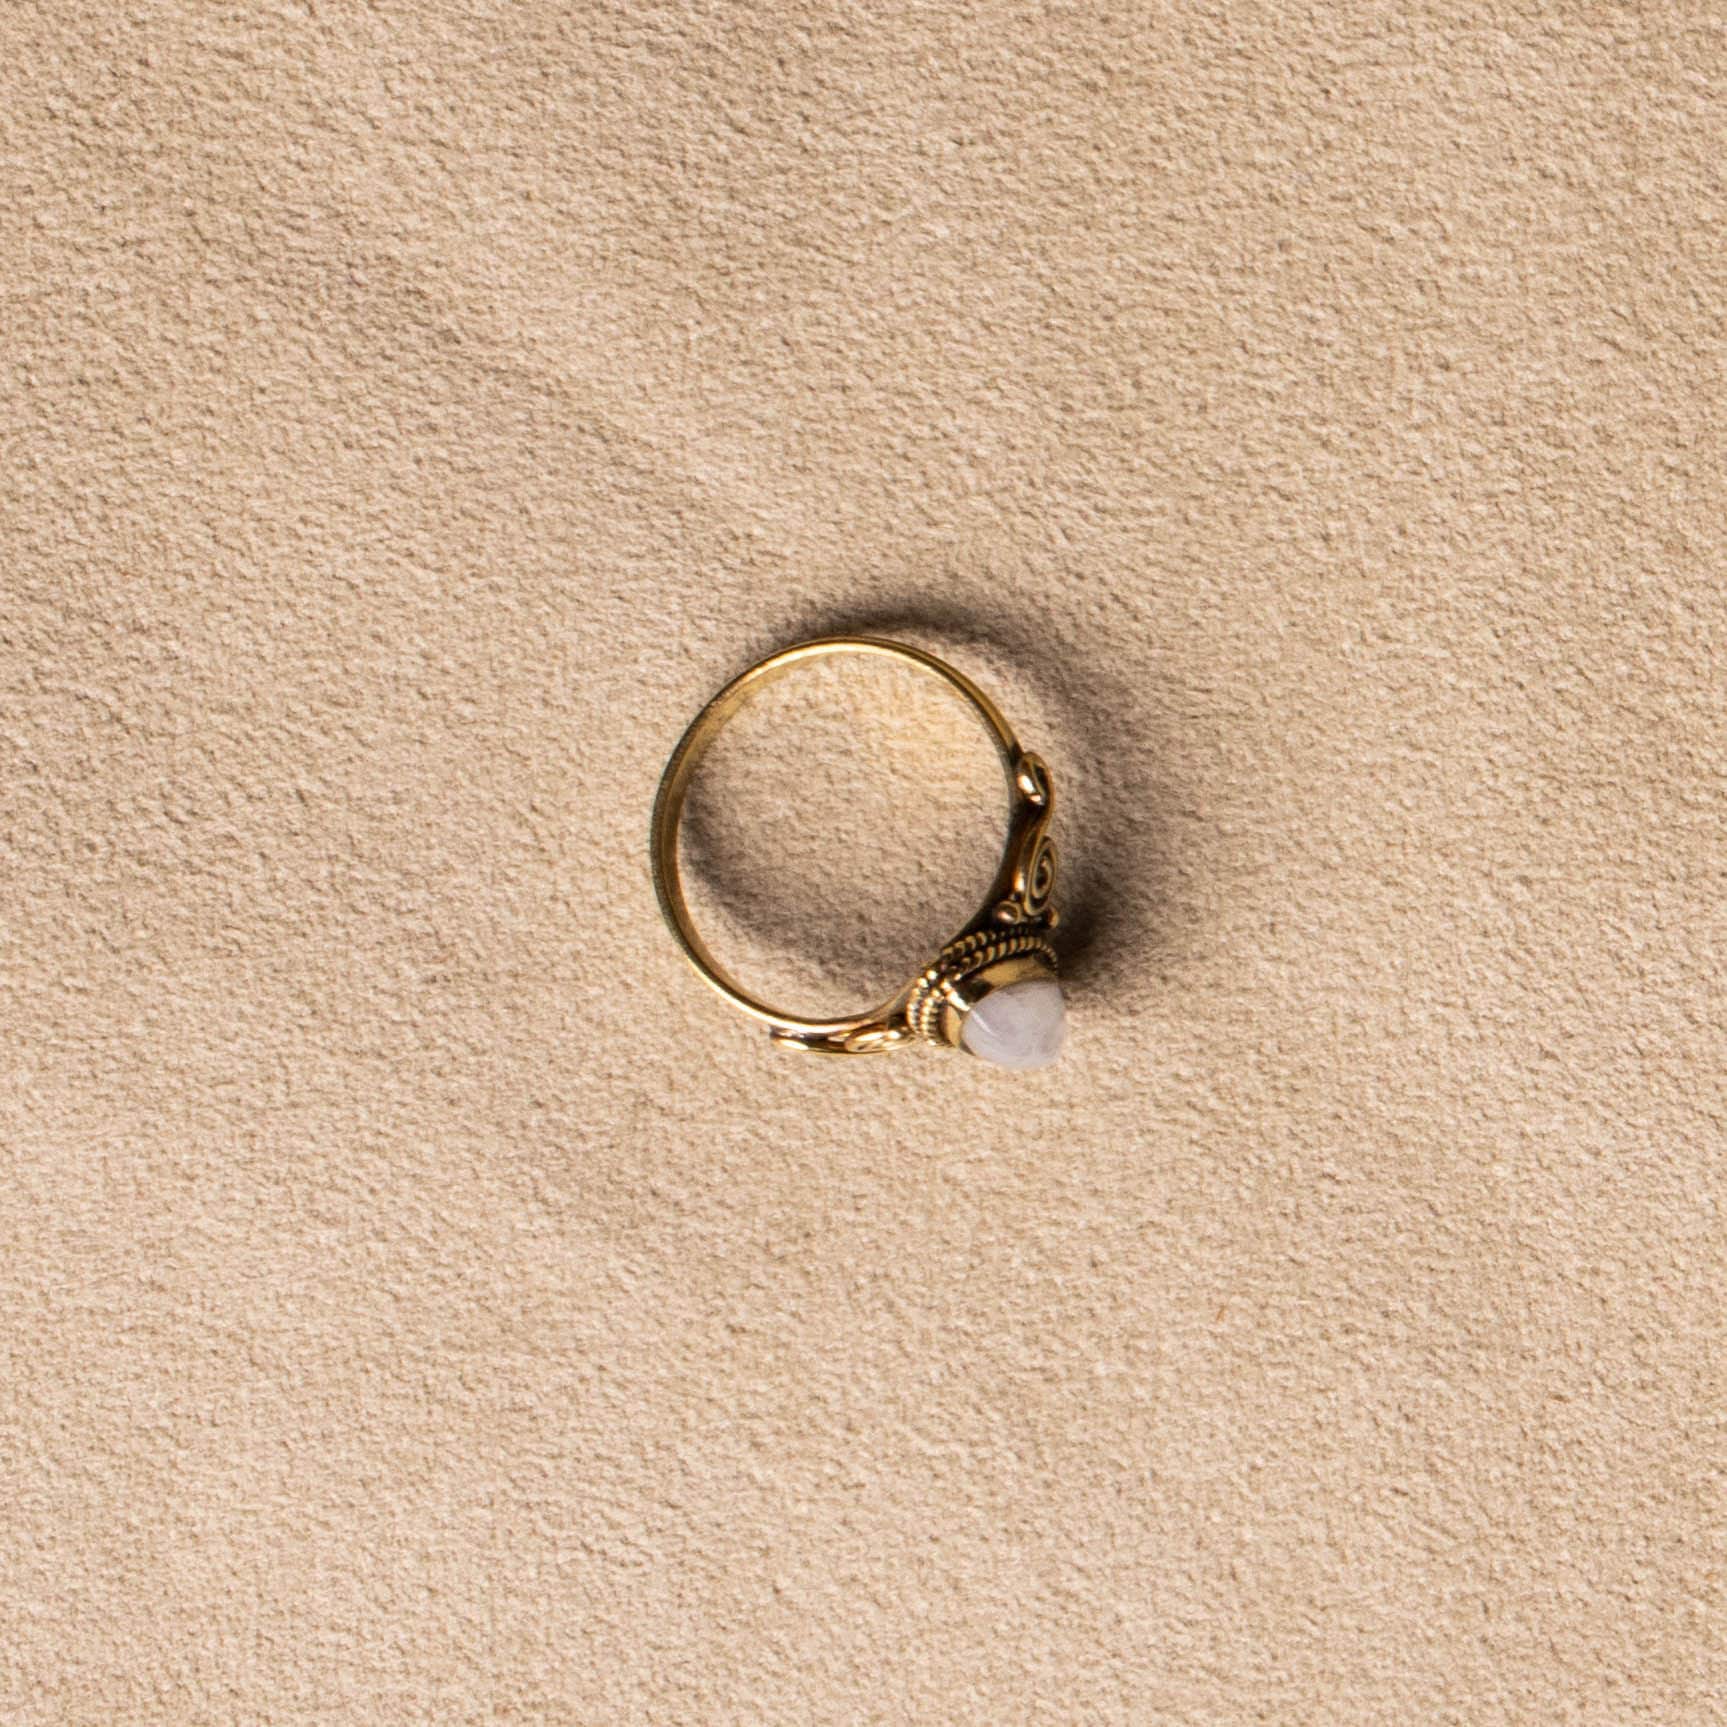 Weißer natürlicher Mondstein Ring gold - NooeBerlin